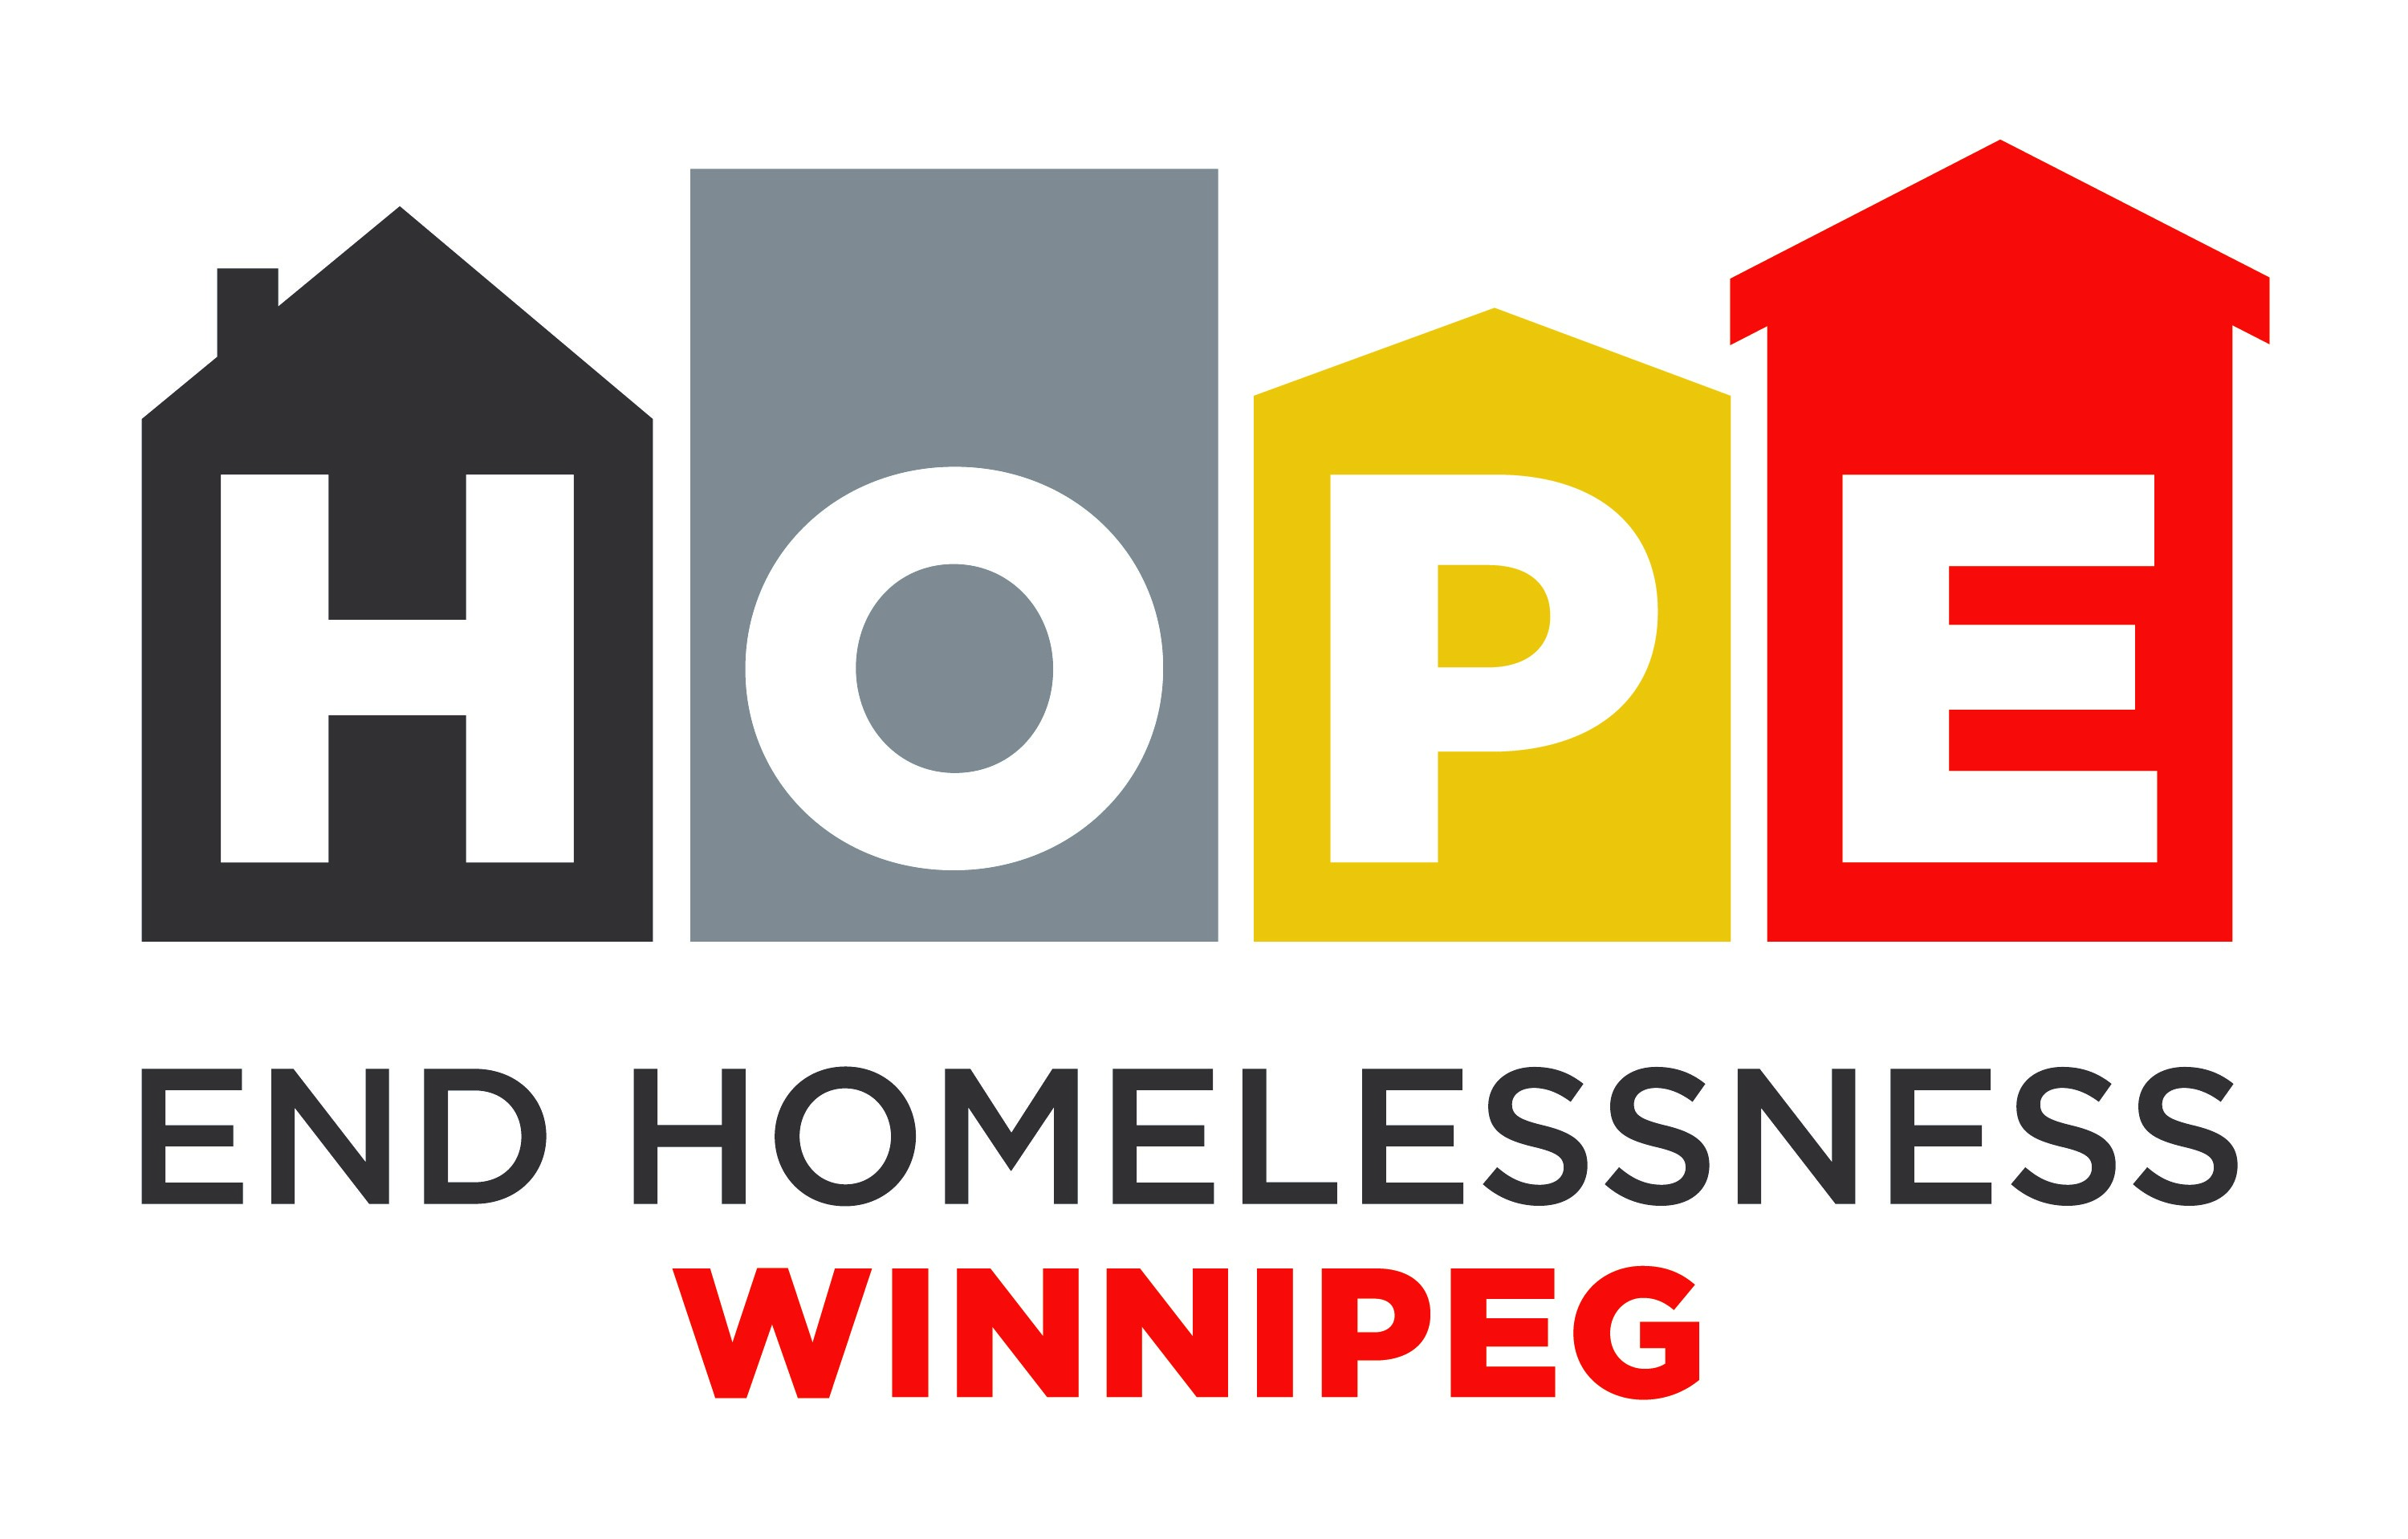 End Homelessness Winnipeg